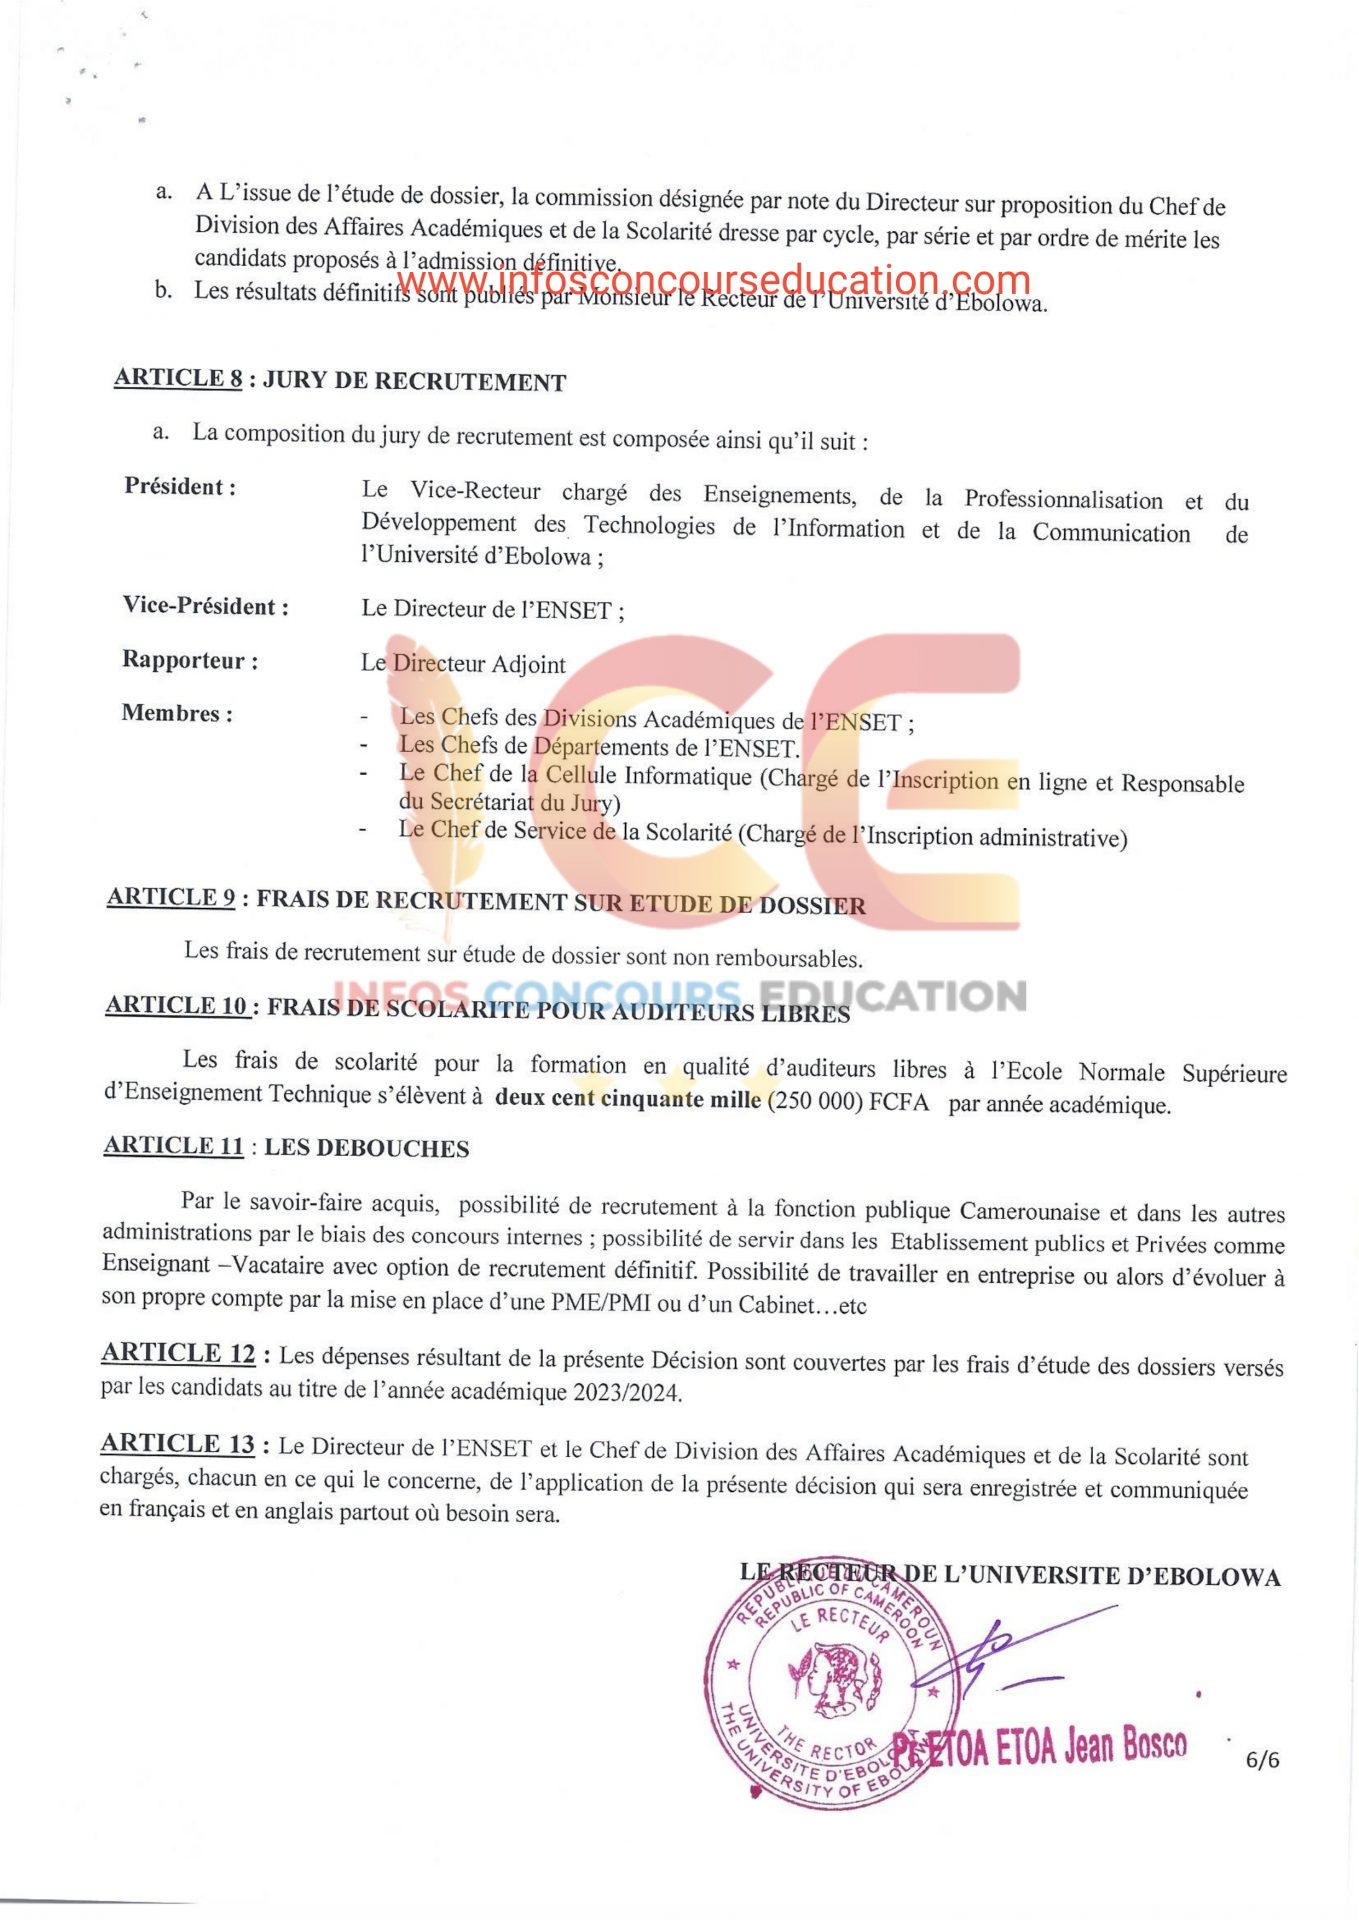 Recrutement des Auditeurs libres ENSET d'Ebolowa 2023